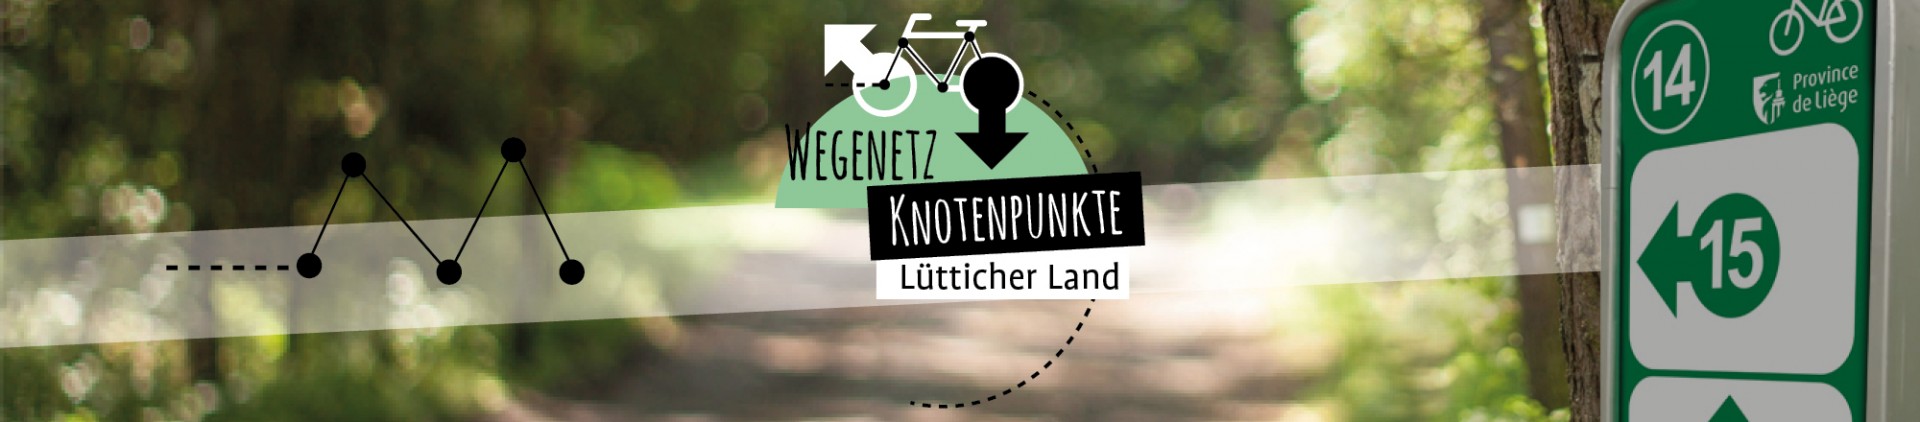 Fahrradtourismus Knotenpunkte in der Provinz Lüttich